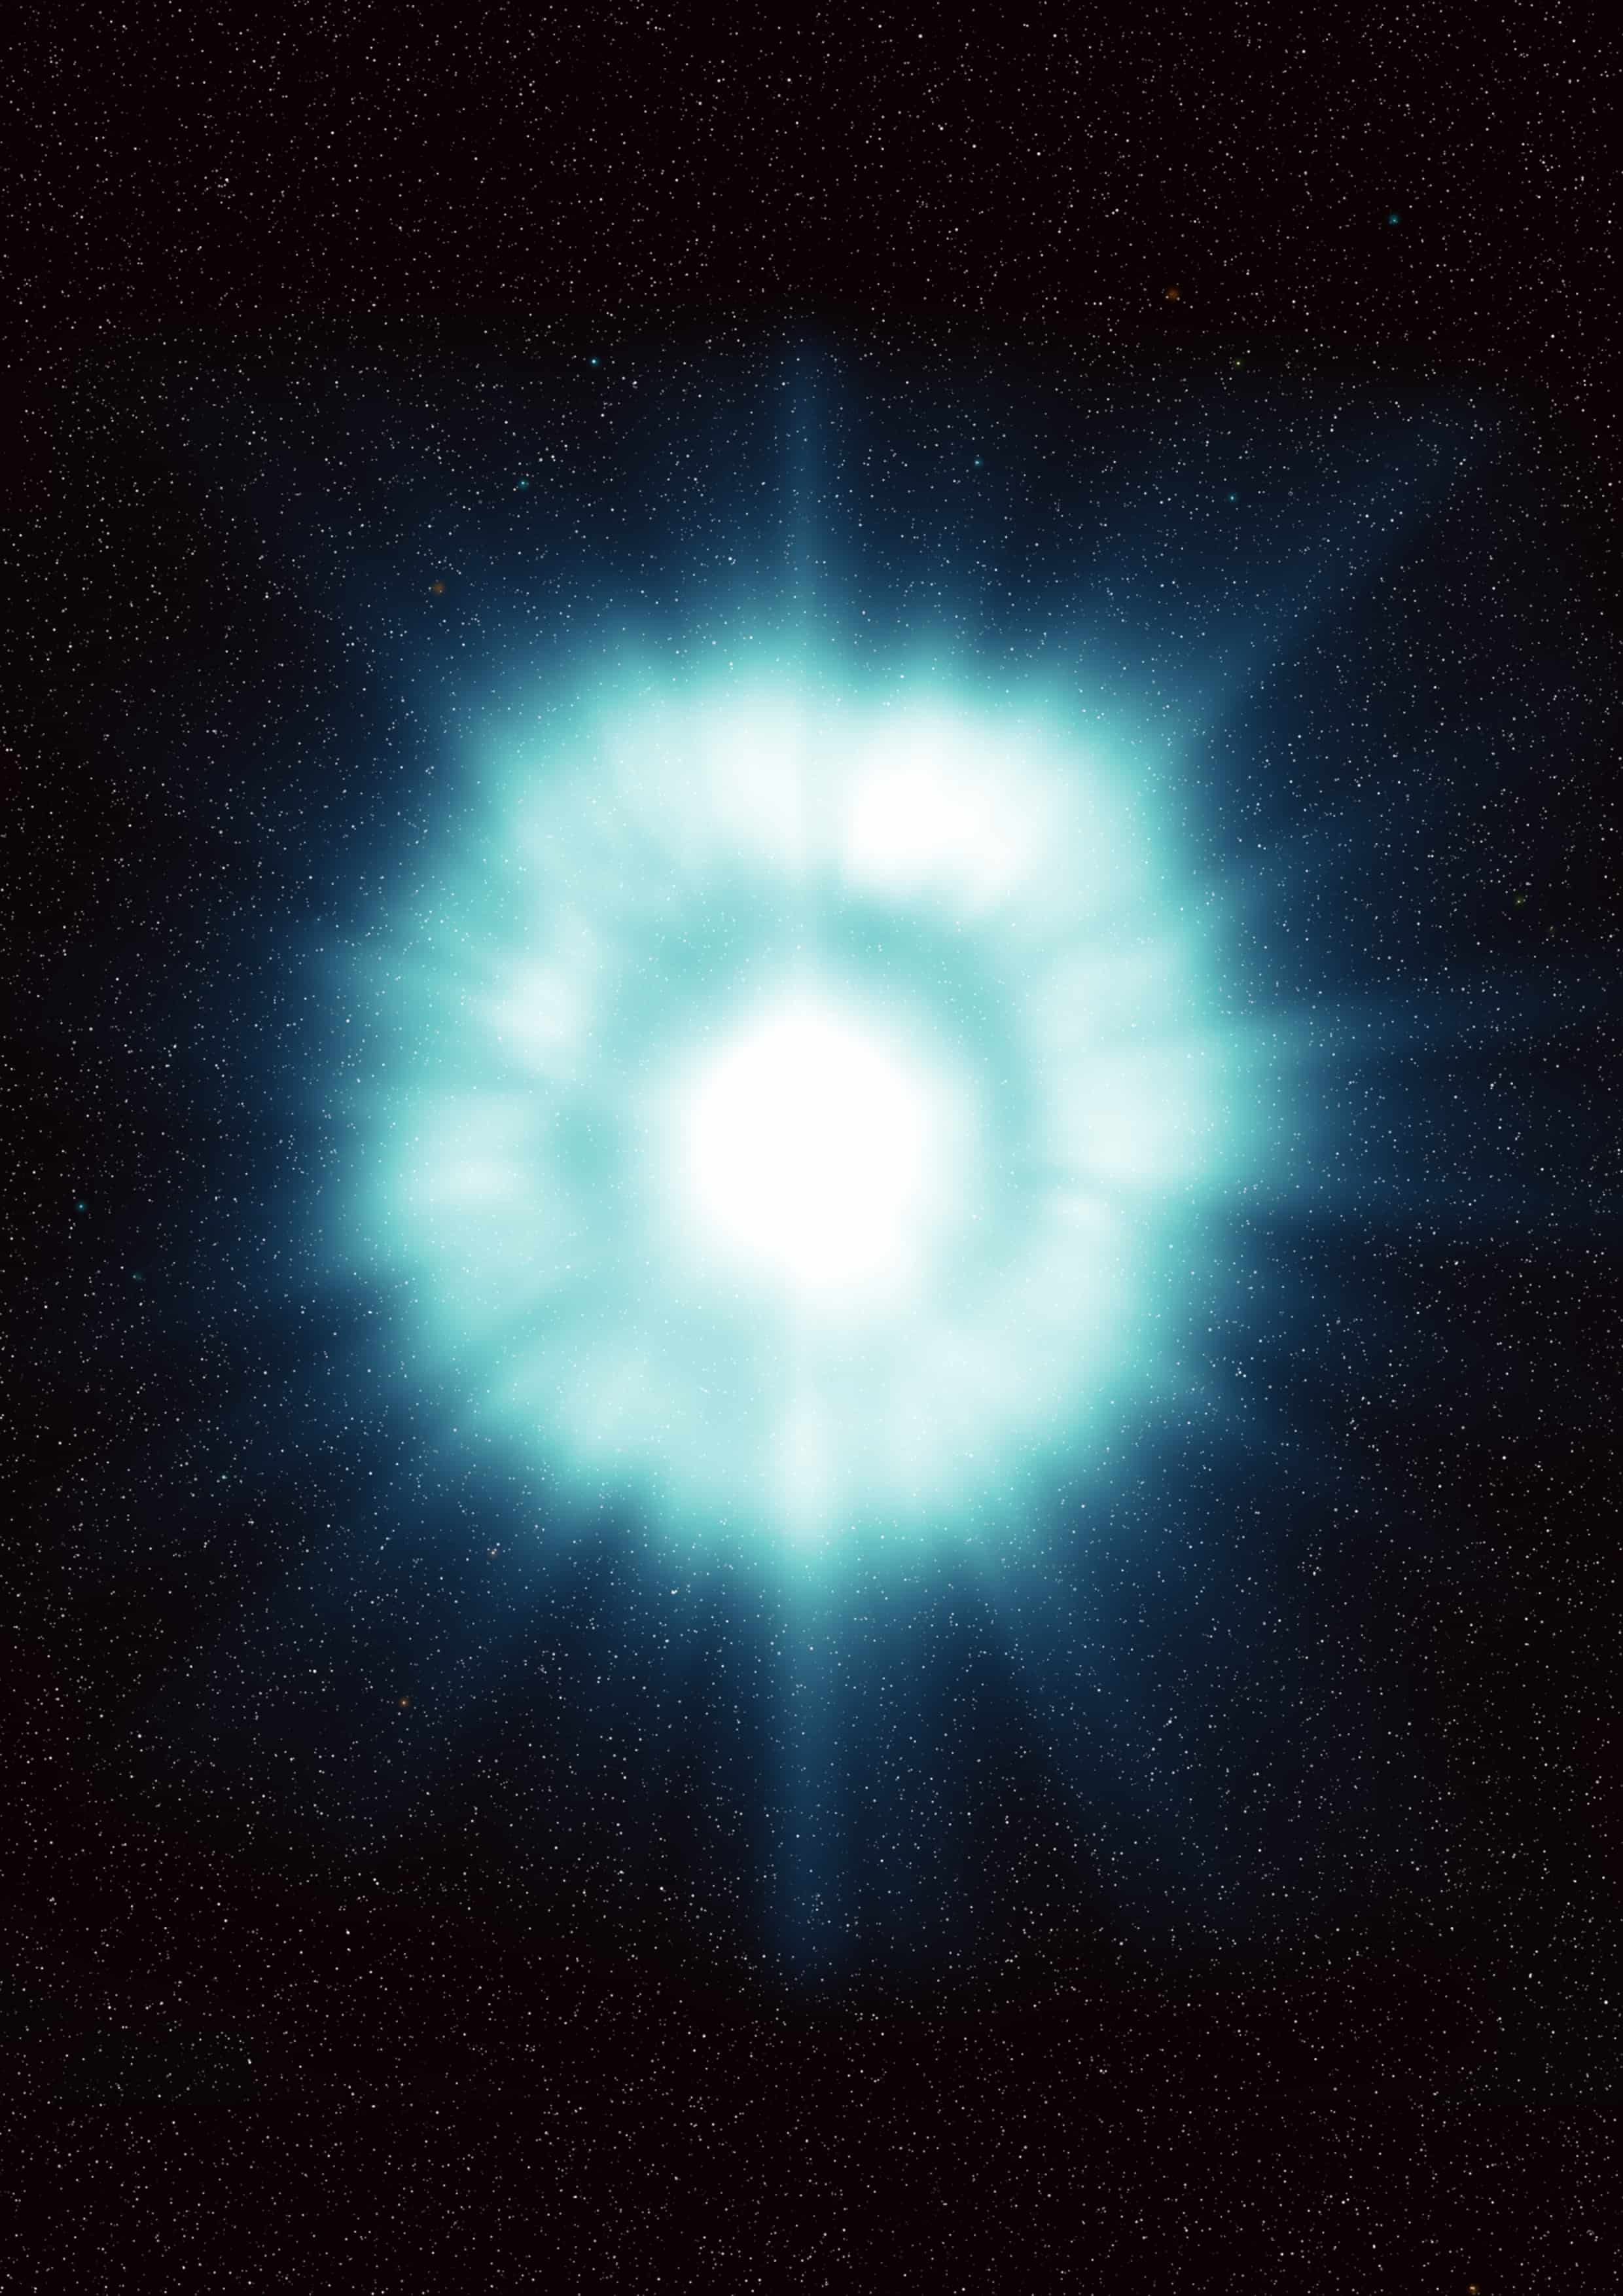 Concepção artística de uma explosão de raios gama, um clarão de radiação muito energética associada a uma galáxia distante. Crédito: ESA, ilustração por ESA/ECF.